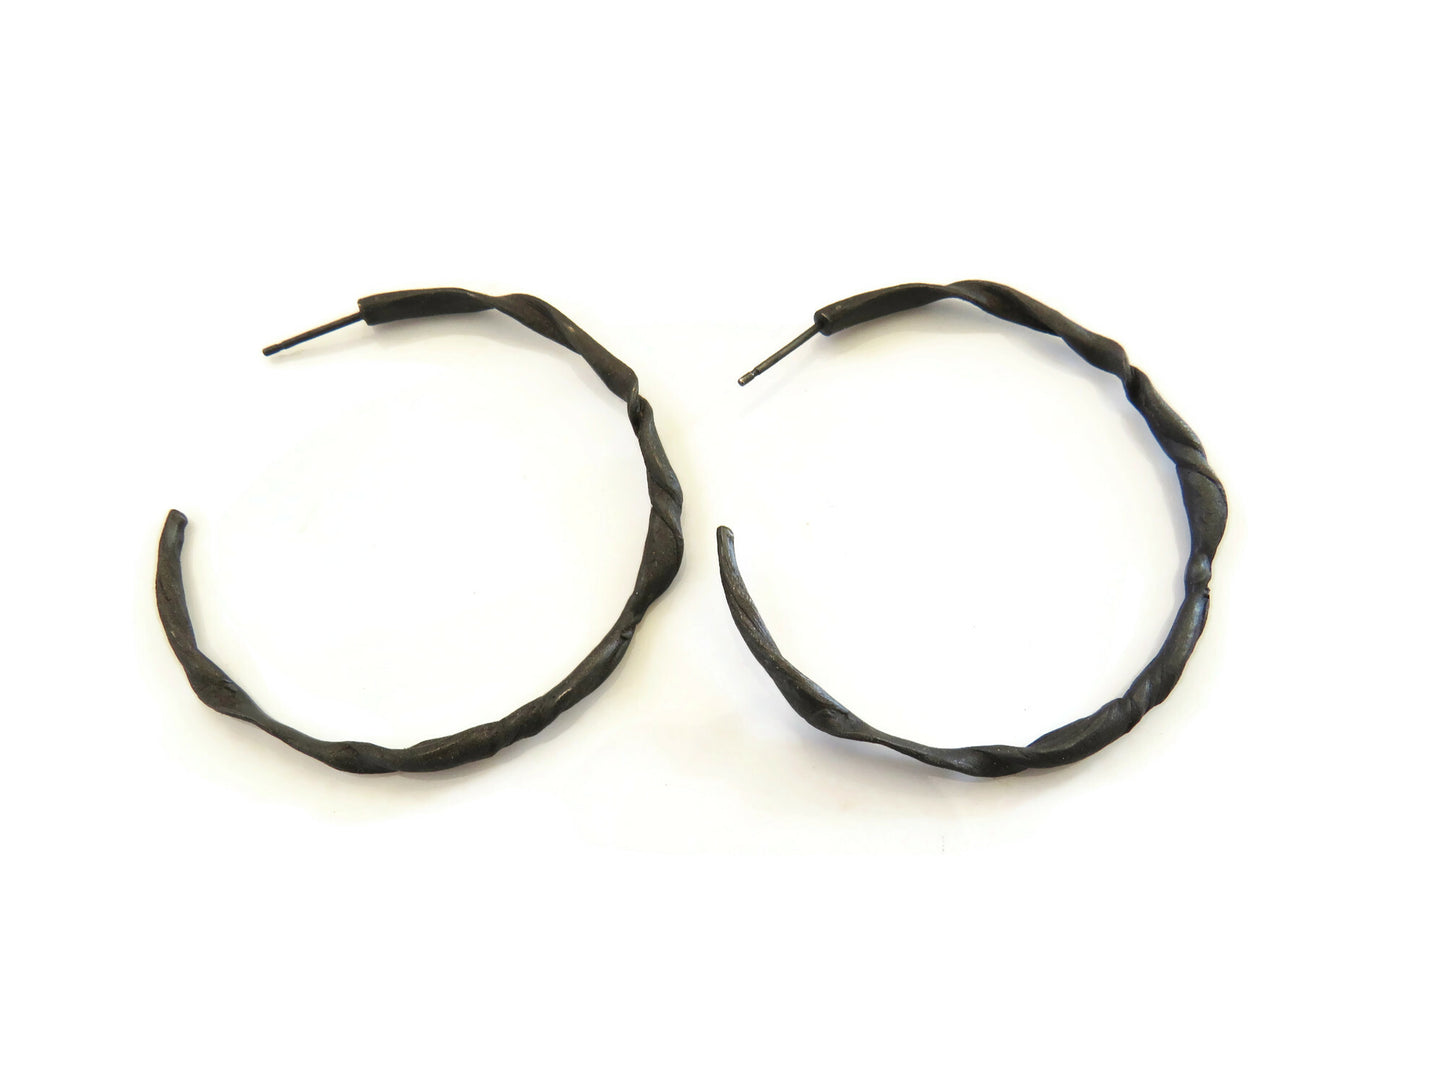 Organic Oxidized Silver Hoops Earrings